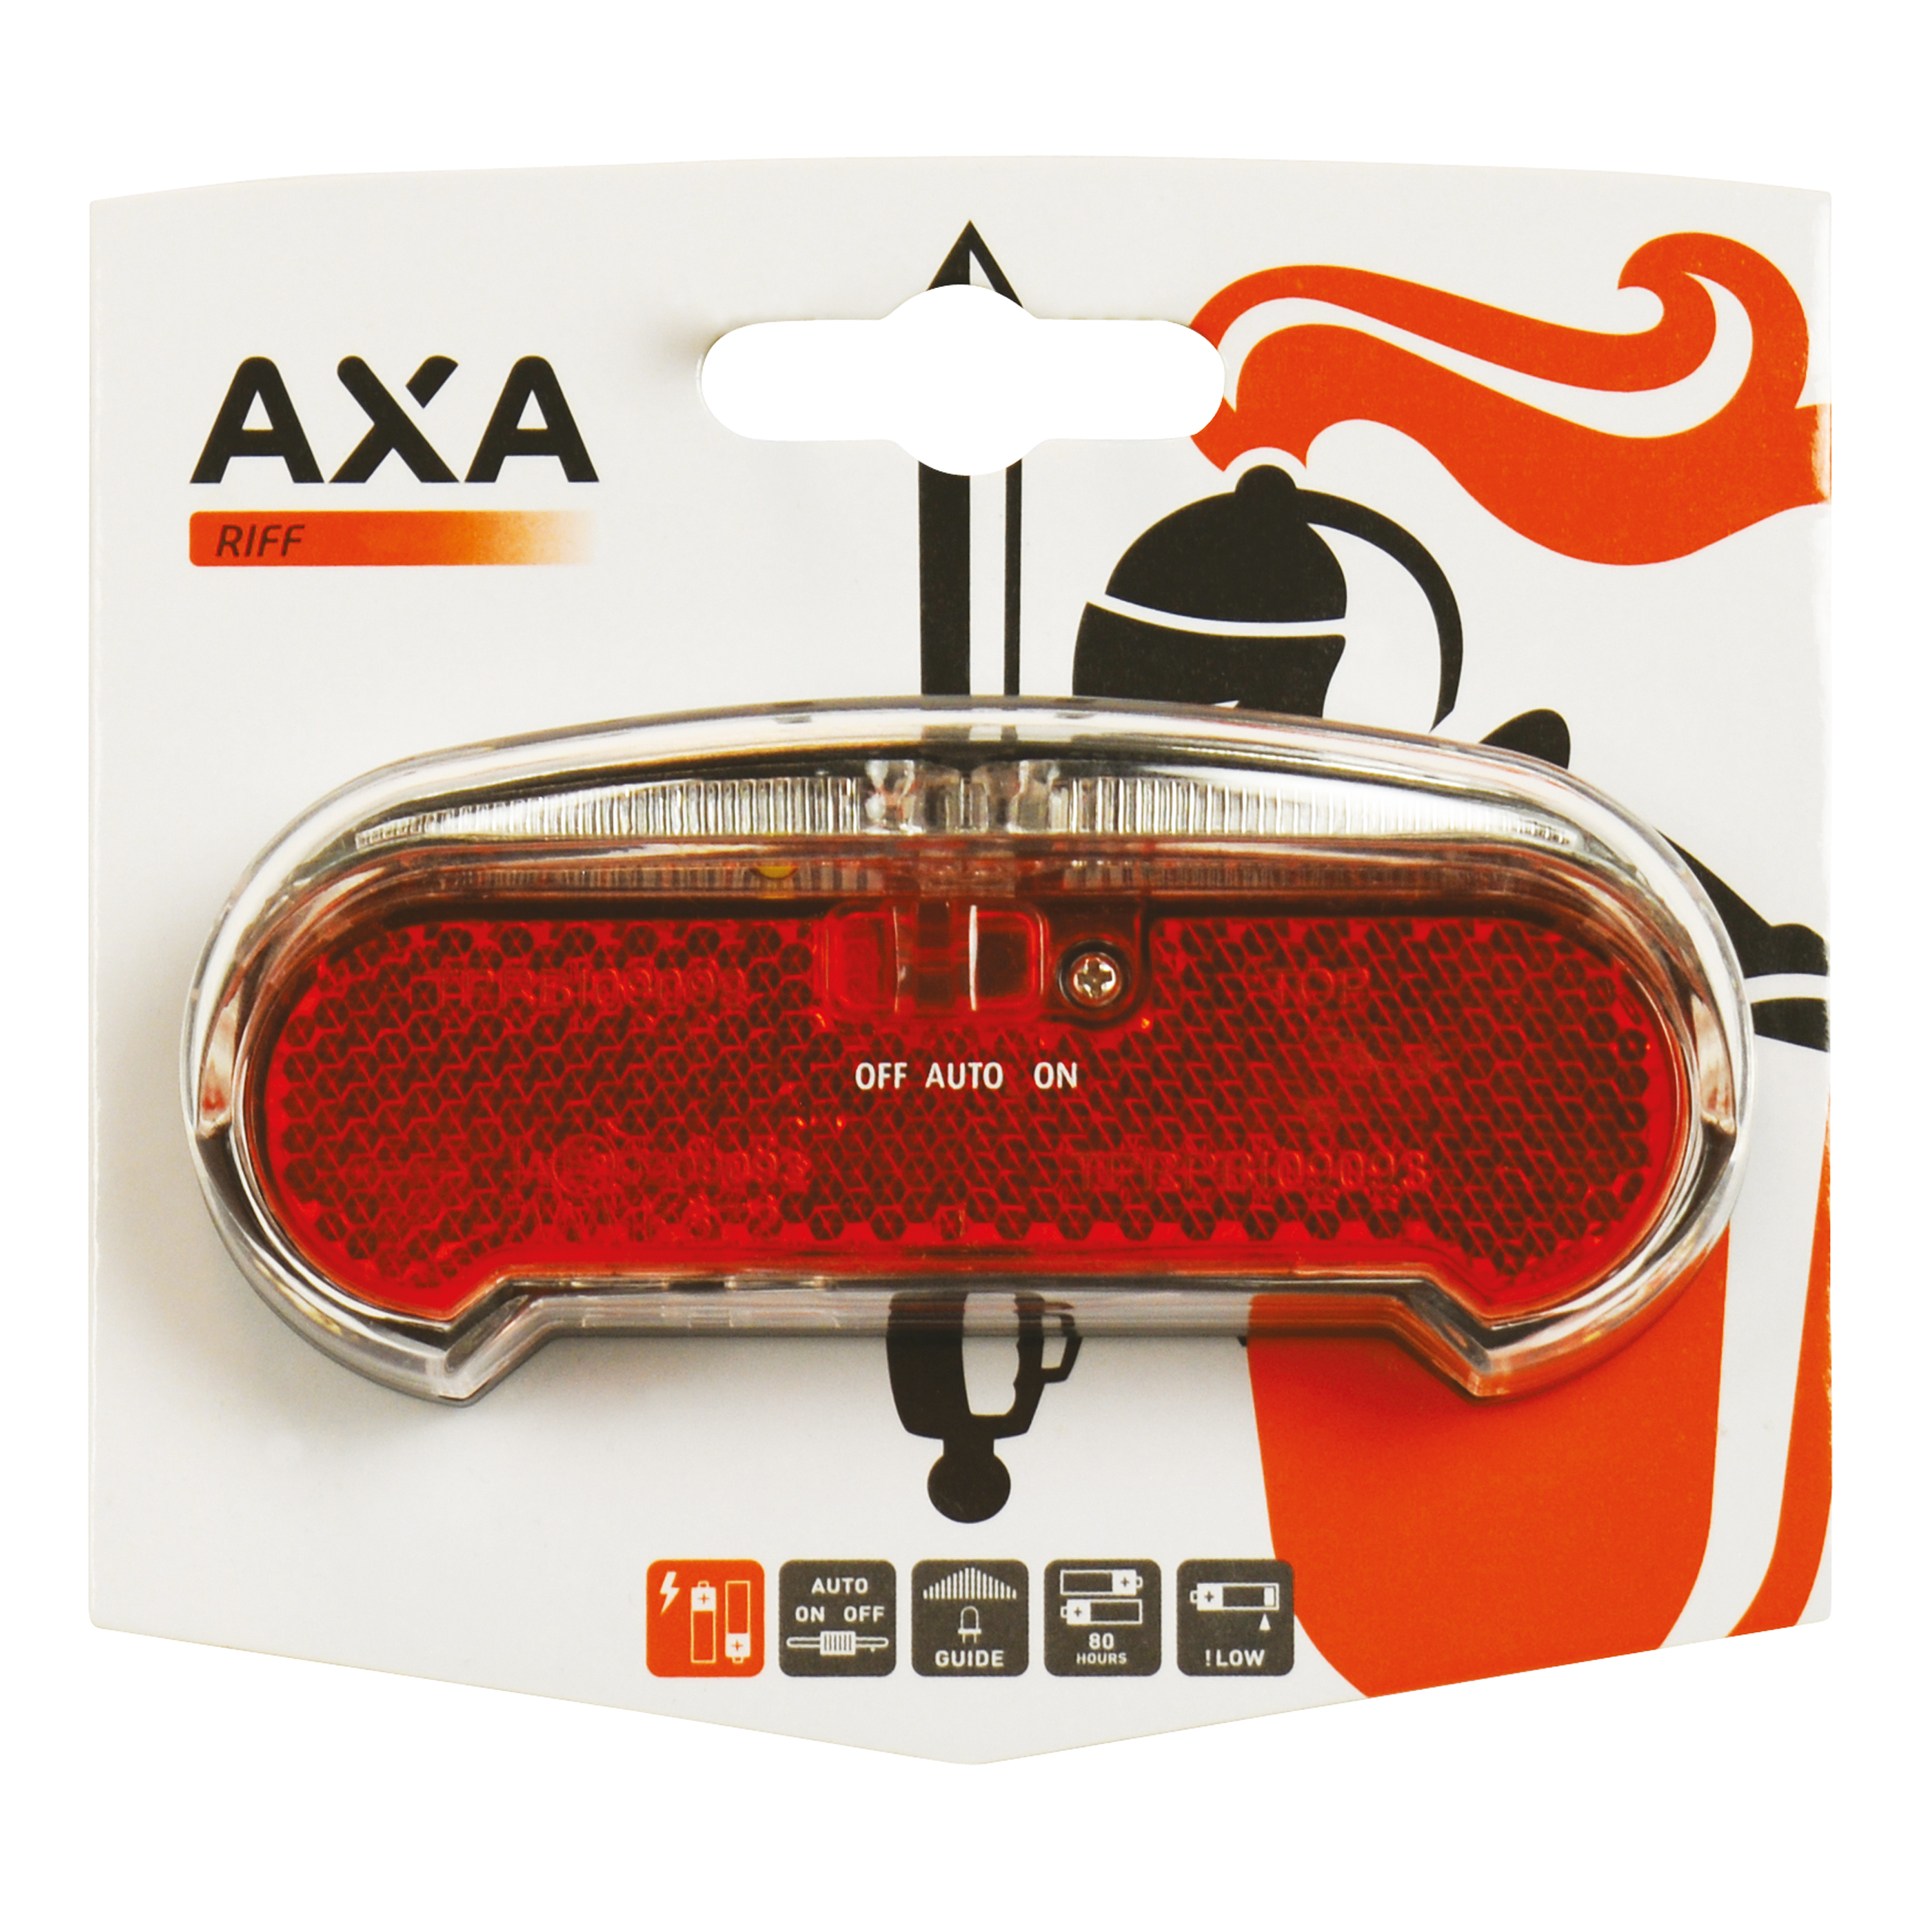 AXA Achterlicht Riff Battery Auto (5011625)